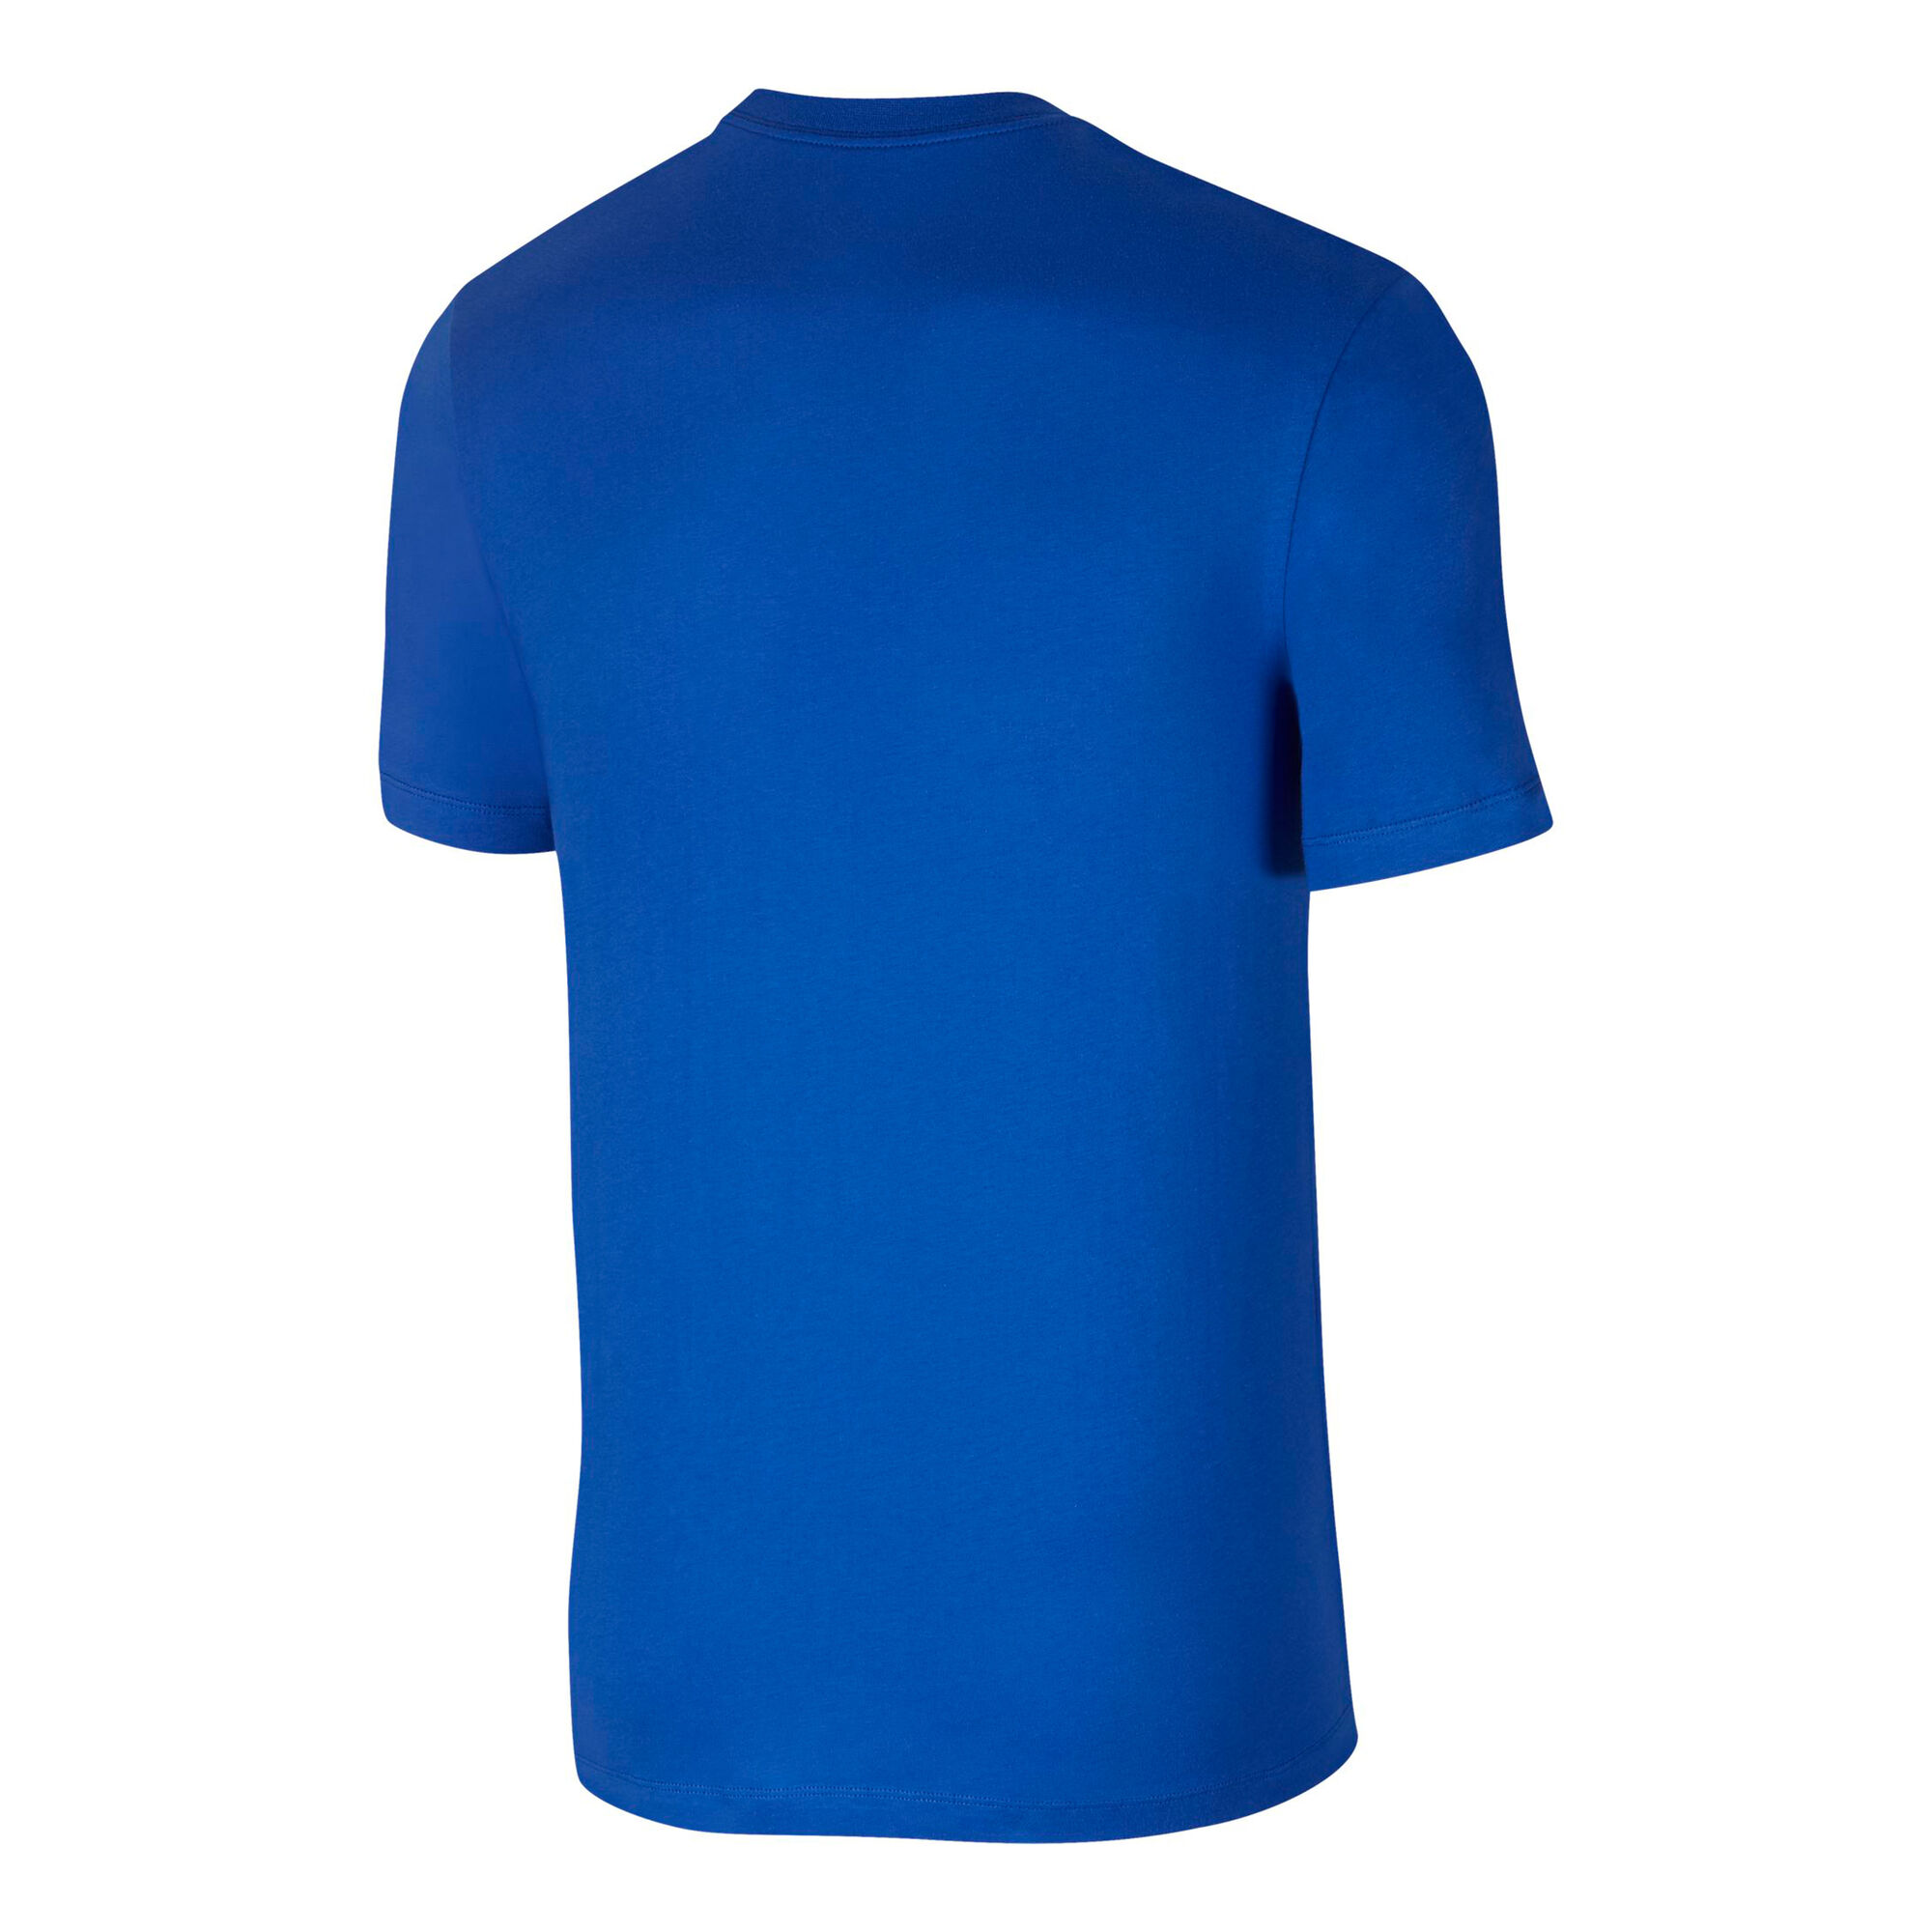 Buy Nike Sportswear T-Shirt Men Blue, Light Blue online | Tennis Point UK